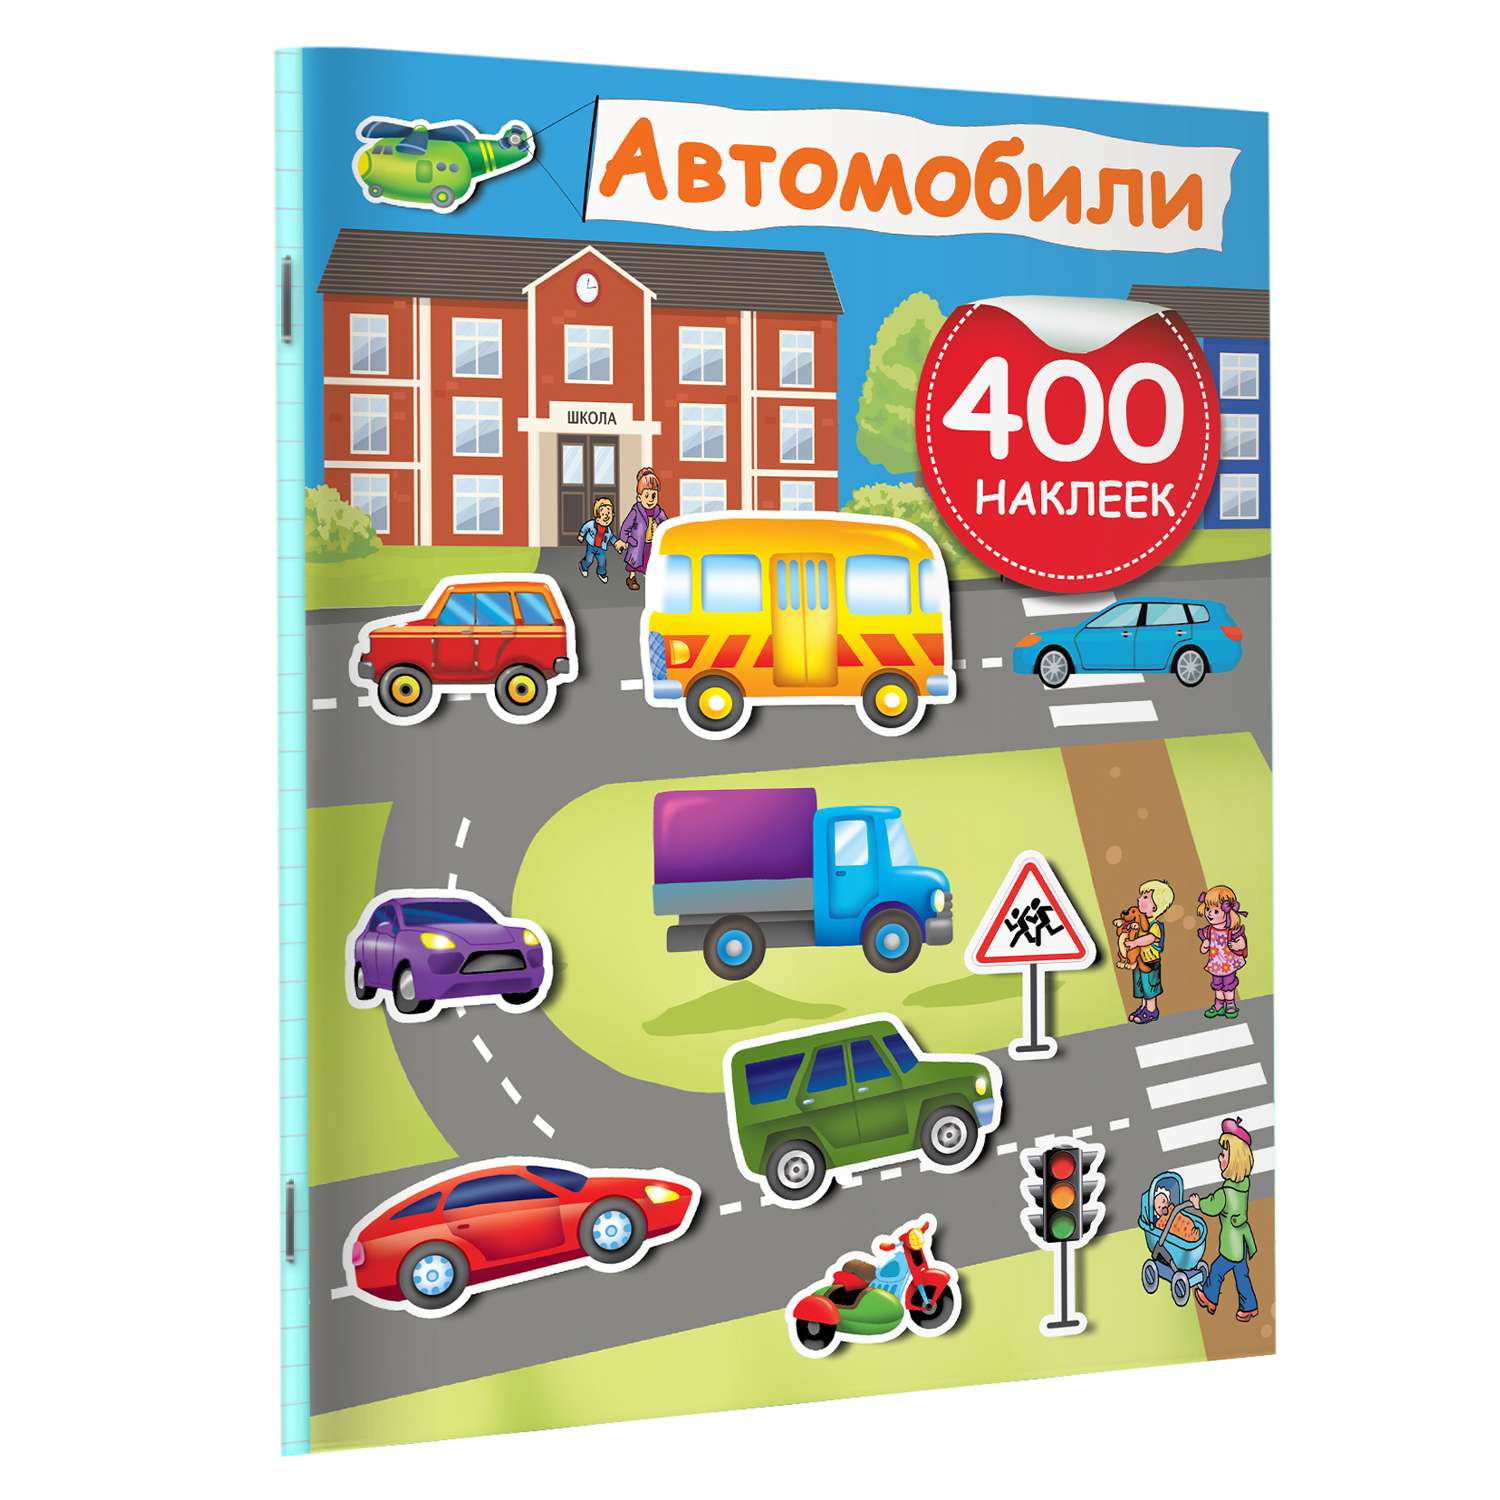 Книга Автомобили 400 наклеек - фото 6